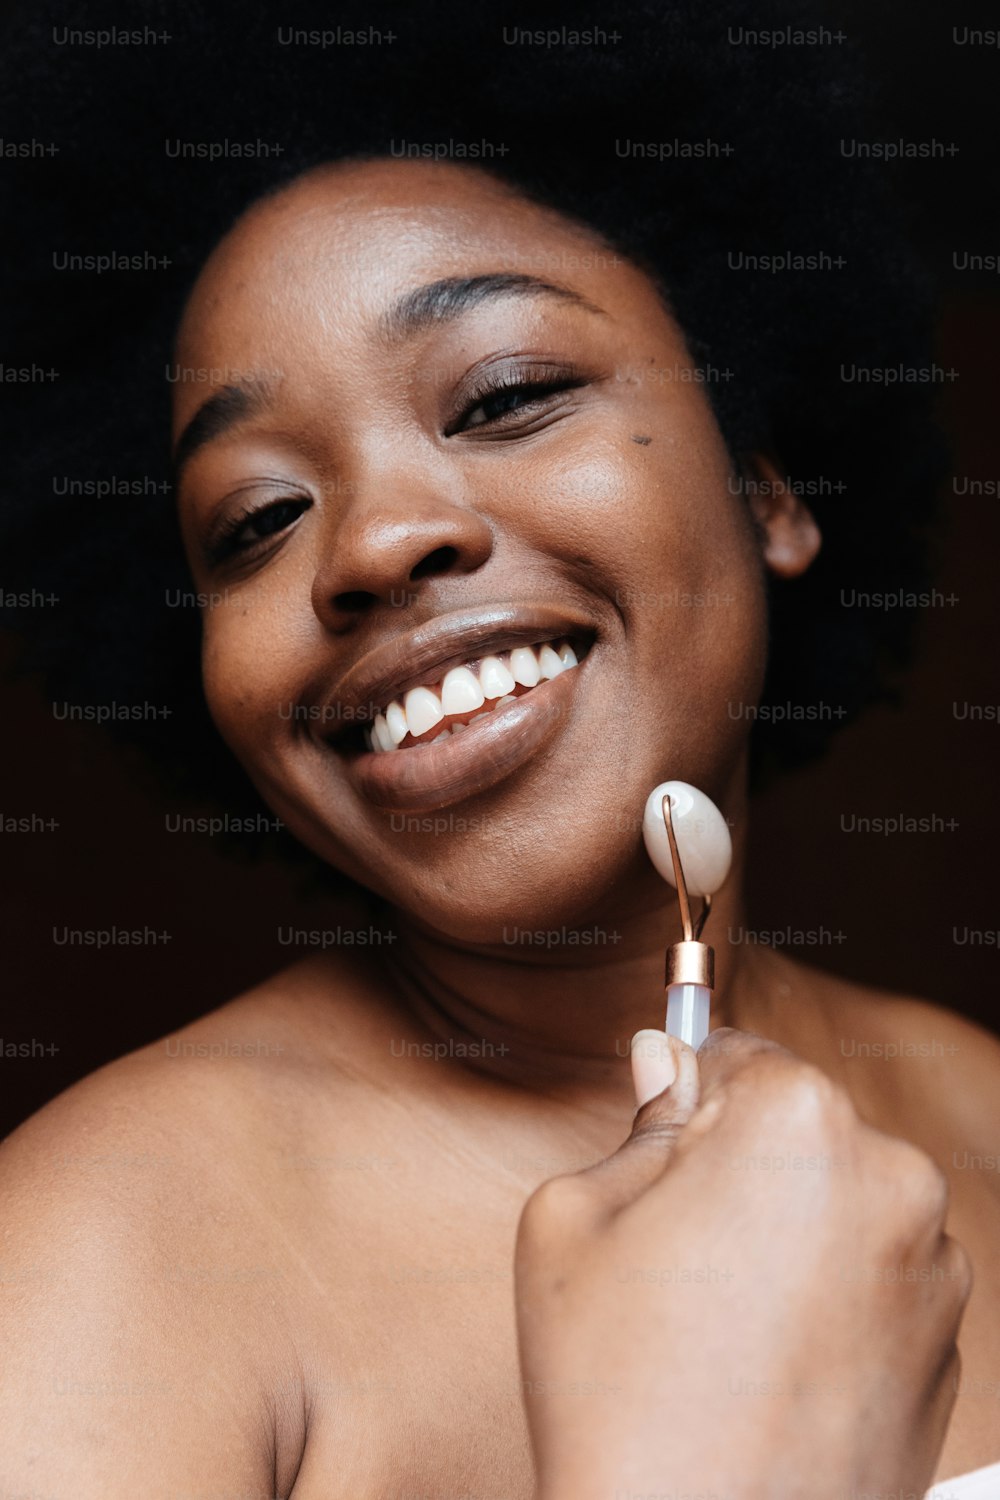 Eine Frau lächelt, während sie eine Zahnbürste in der Hand hält